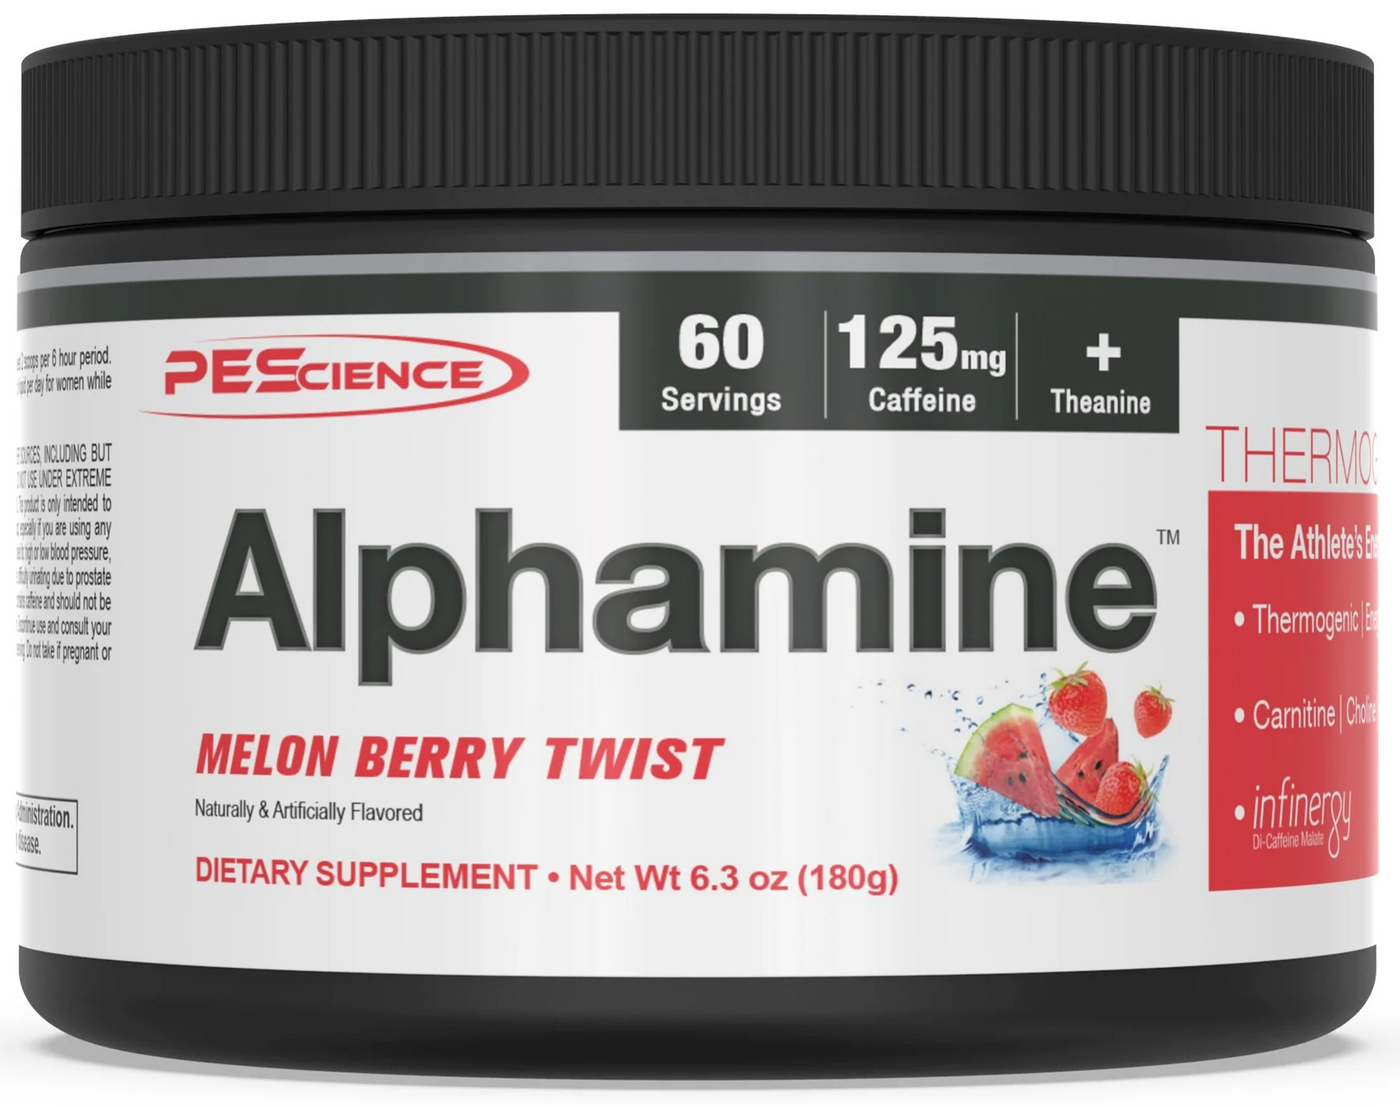 PEScience | Alphamine